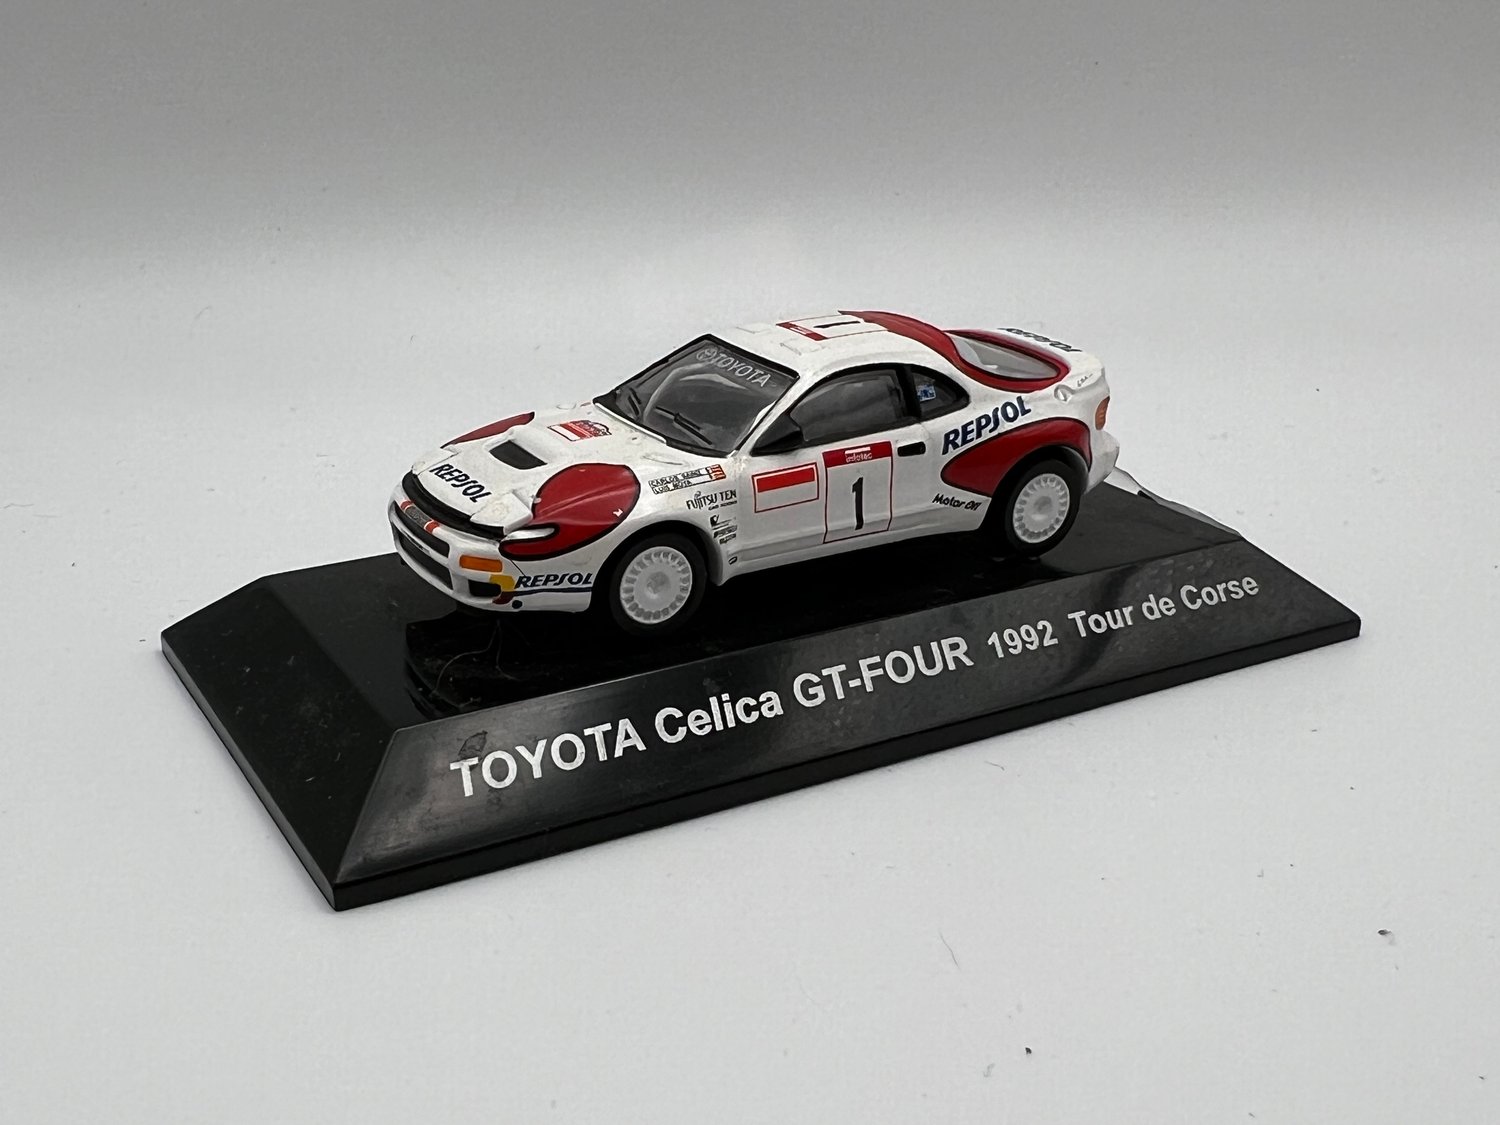 CM's Toyota Celica GT-Four 1992 Tour de Corse 